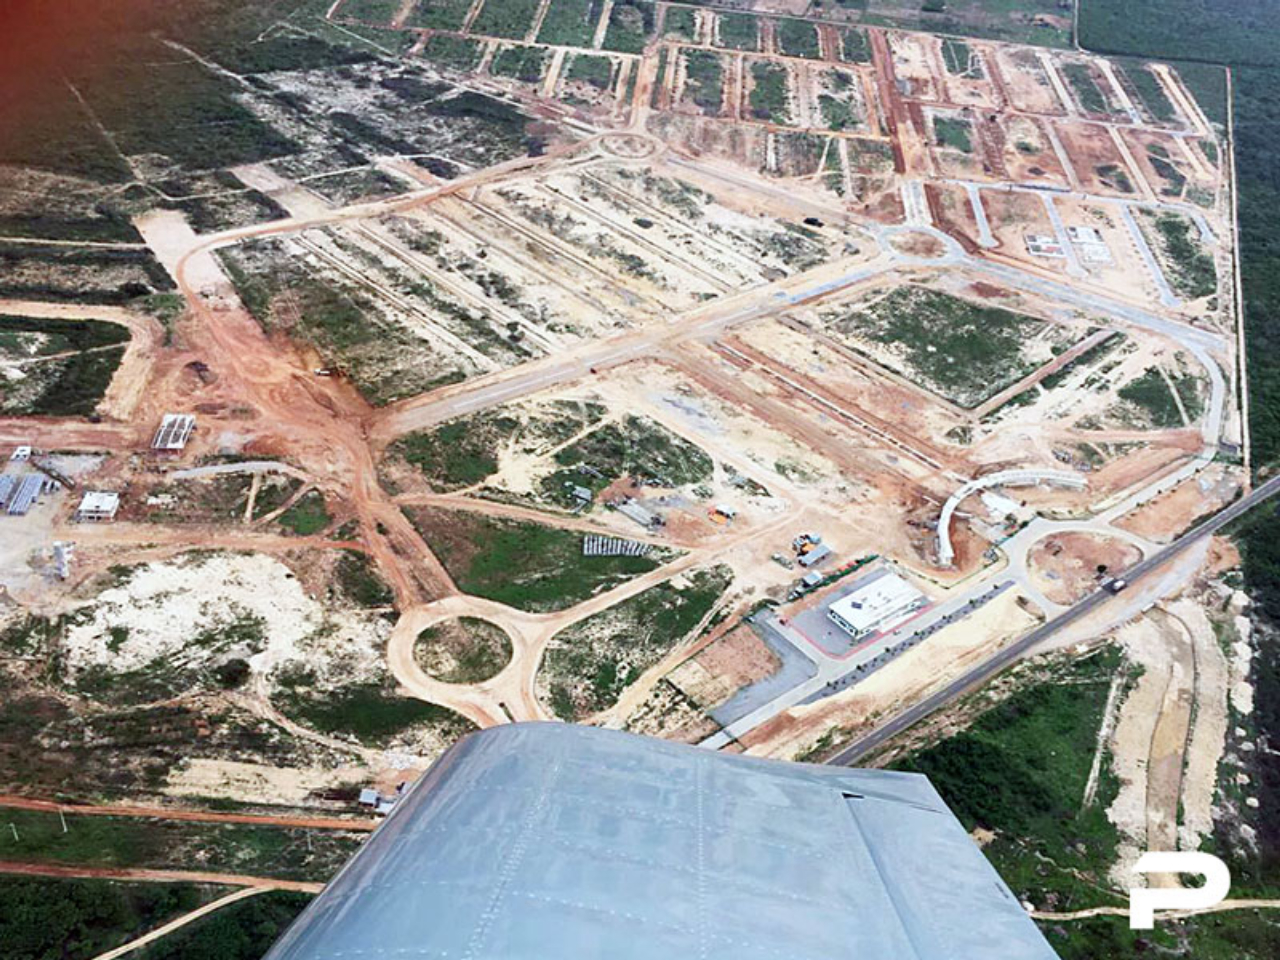 Vista aérea mostra a cidade inteligente em fase de construção no Ceará. Imagem: Divulgação.